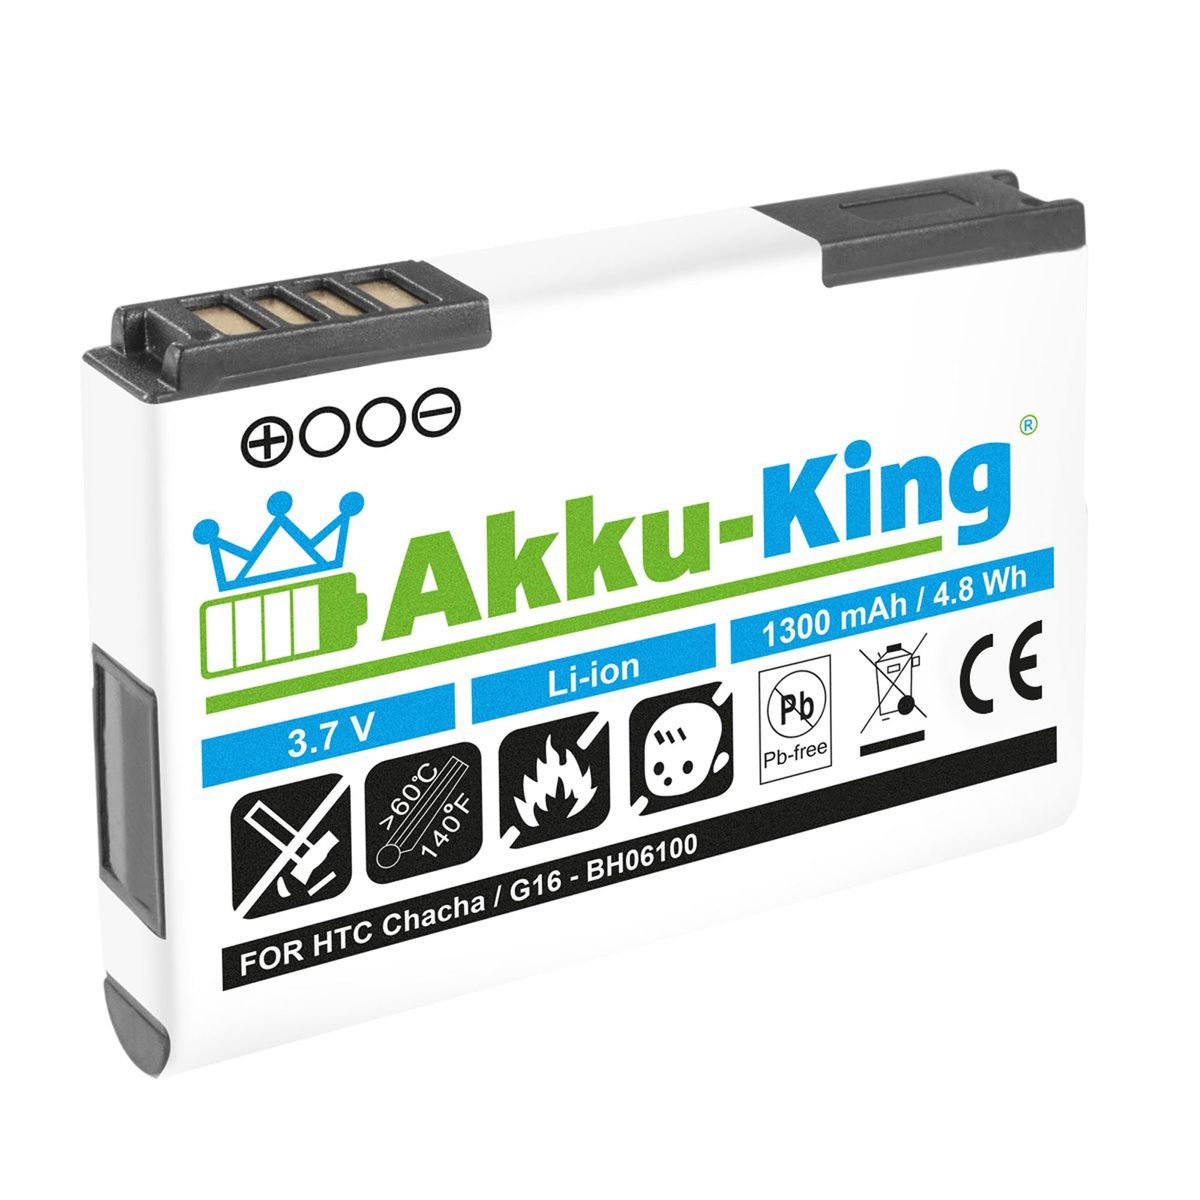 AKKU-KING Akku kompatibel mit HTC Li-Ion 1300mAh Handy-Akku, 3.7 BA-S570 Volt